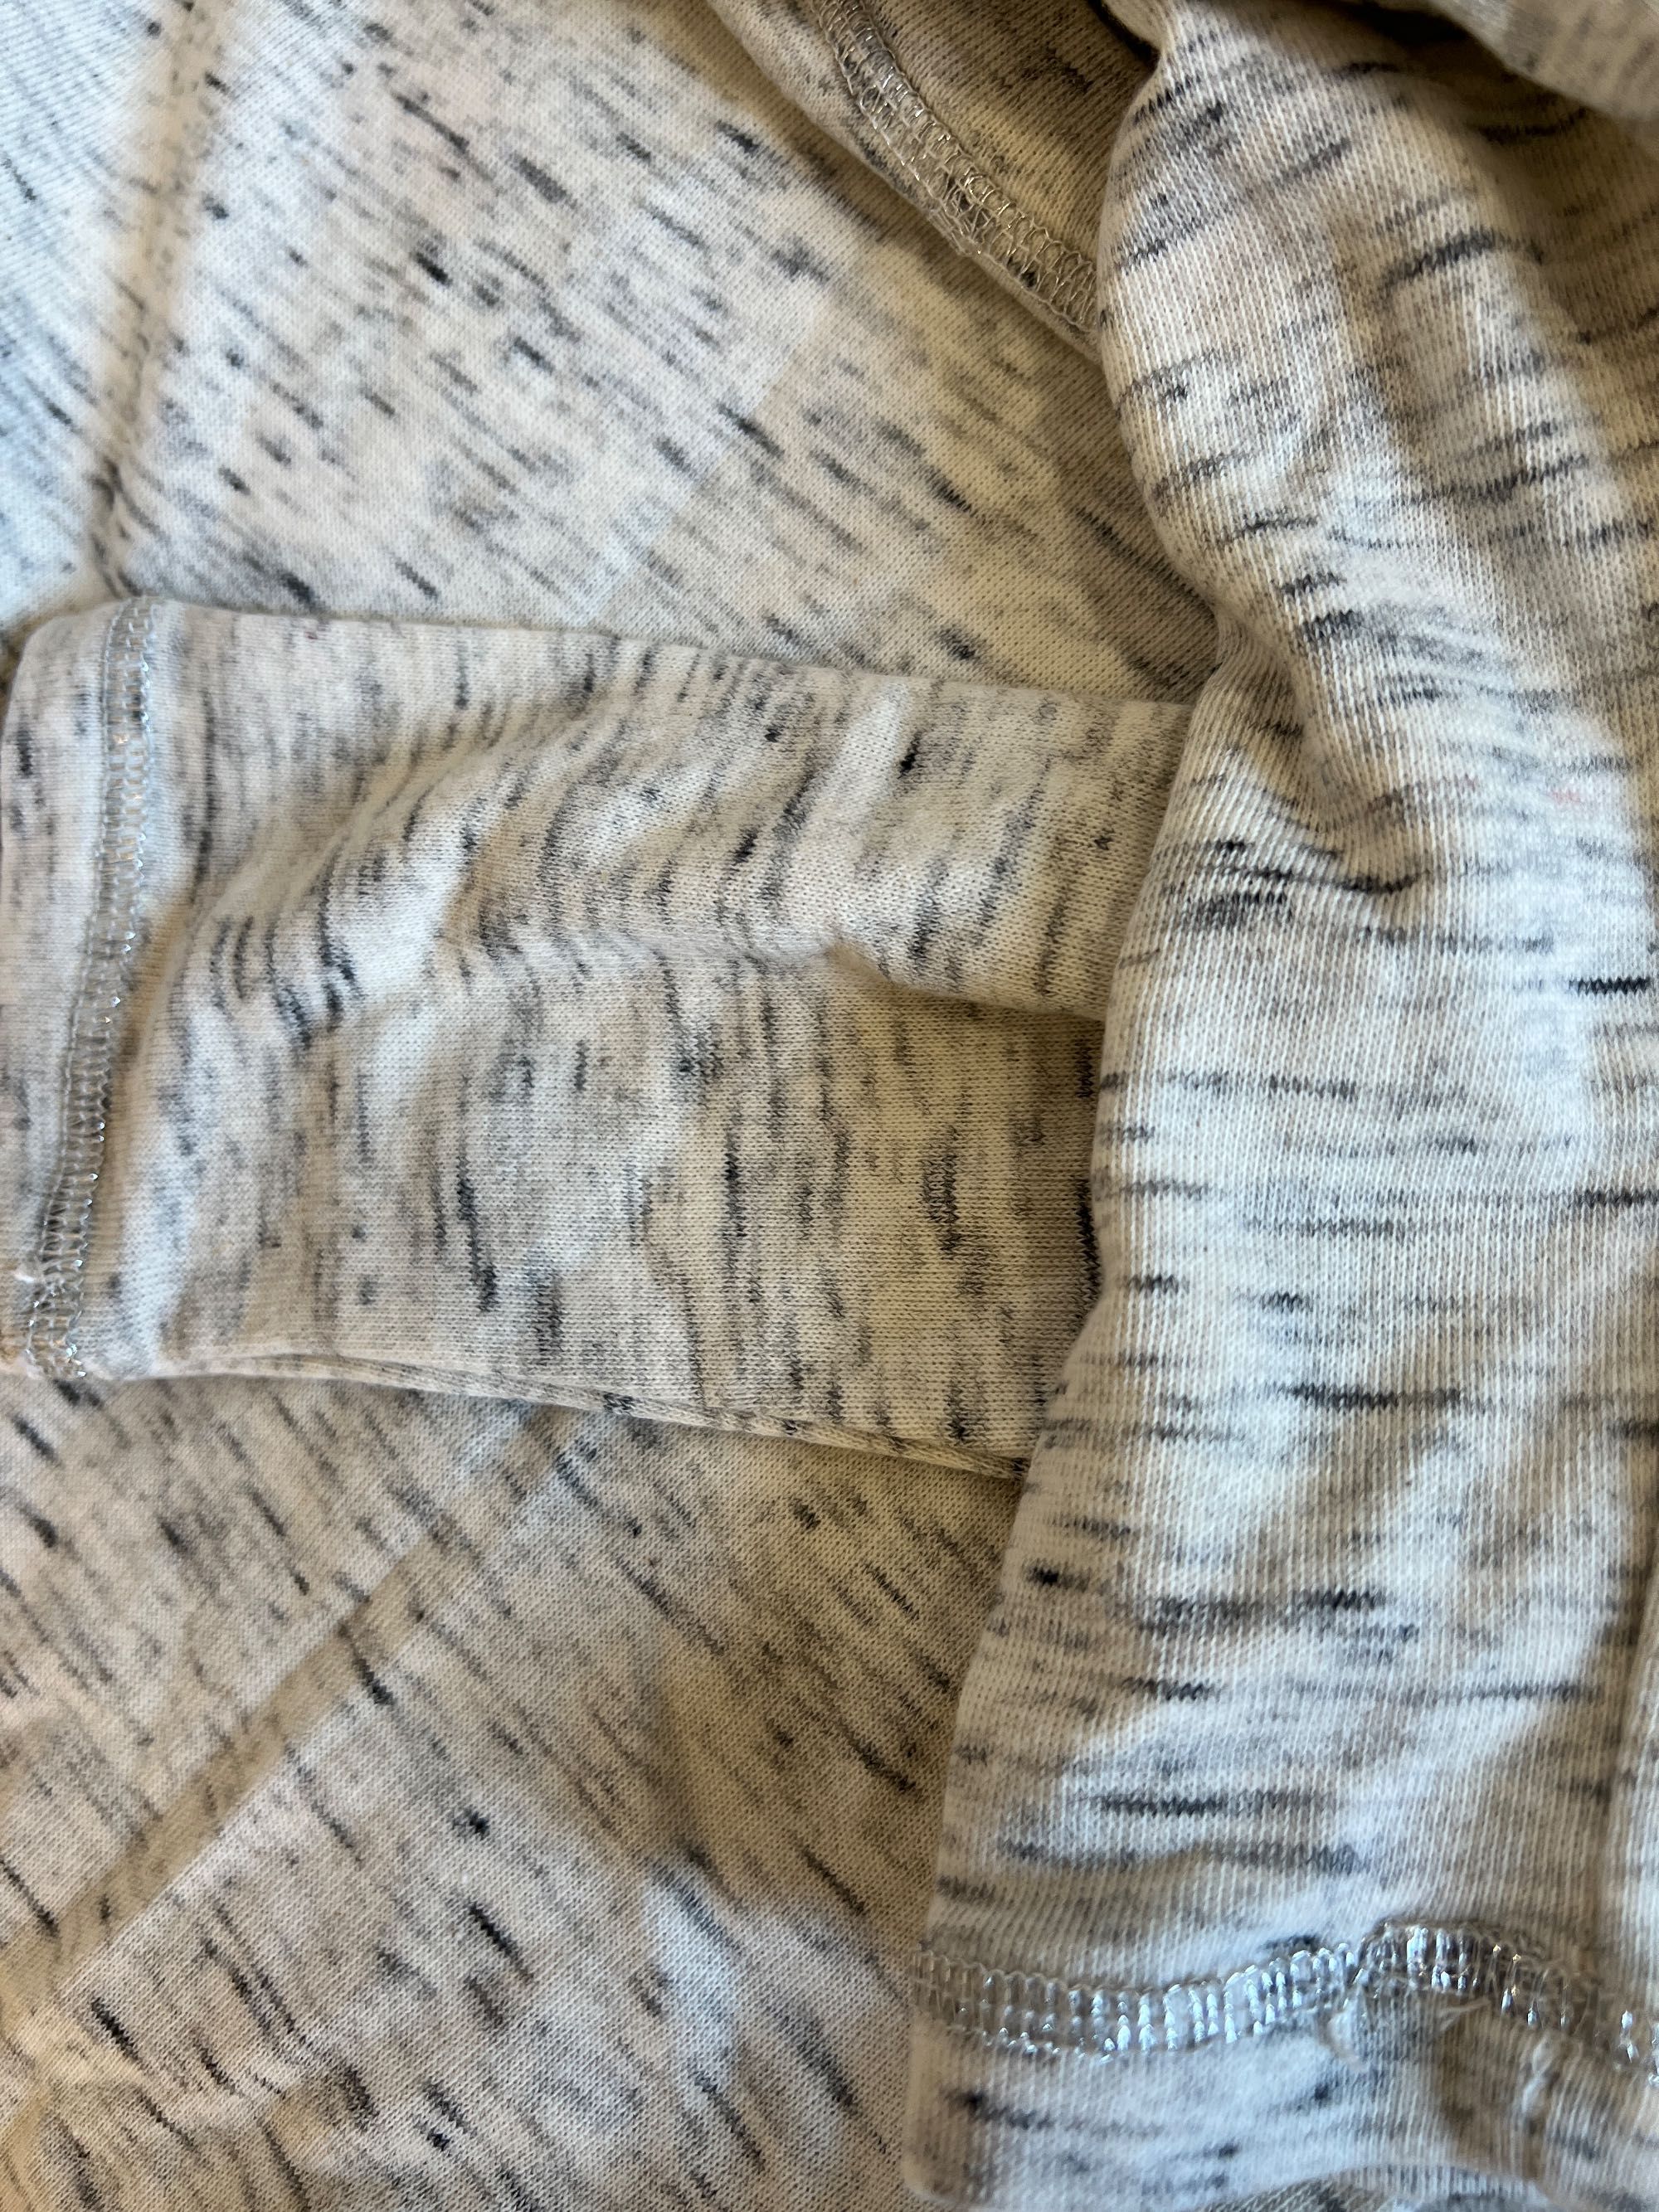 Bluza / sweter kremowy / beżowy